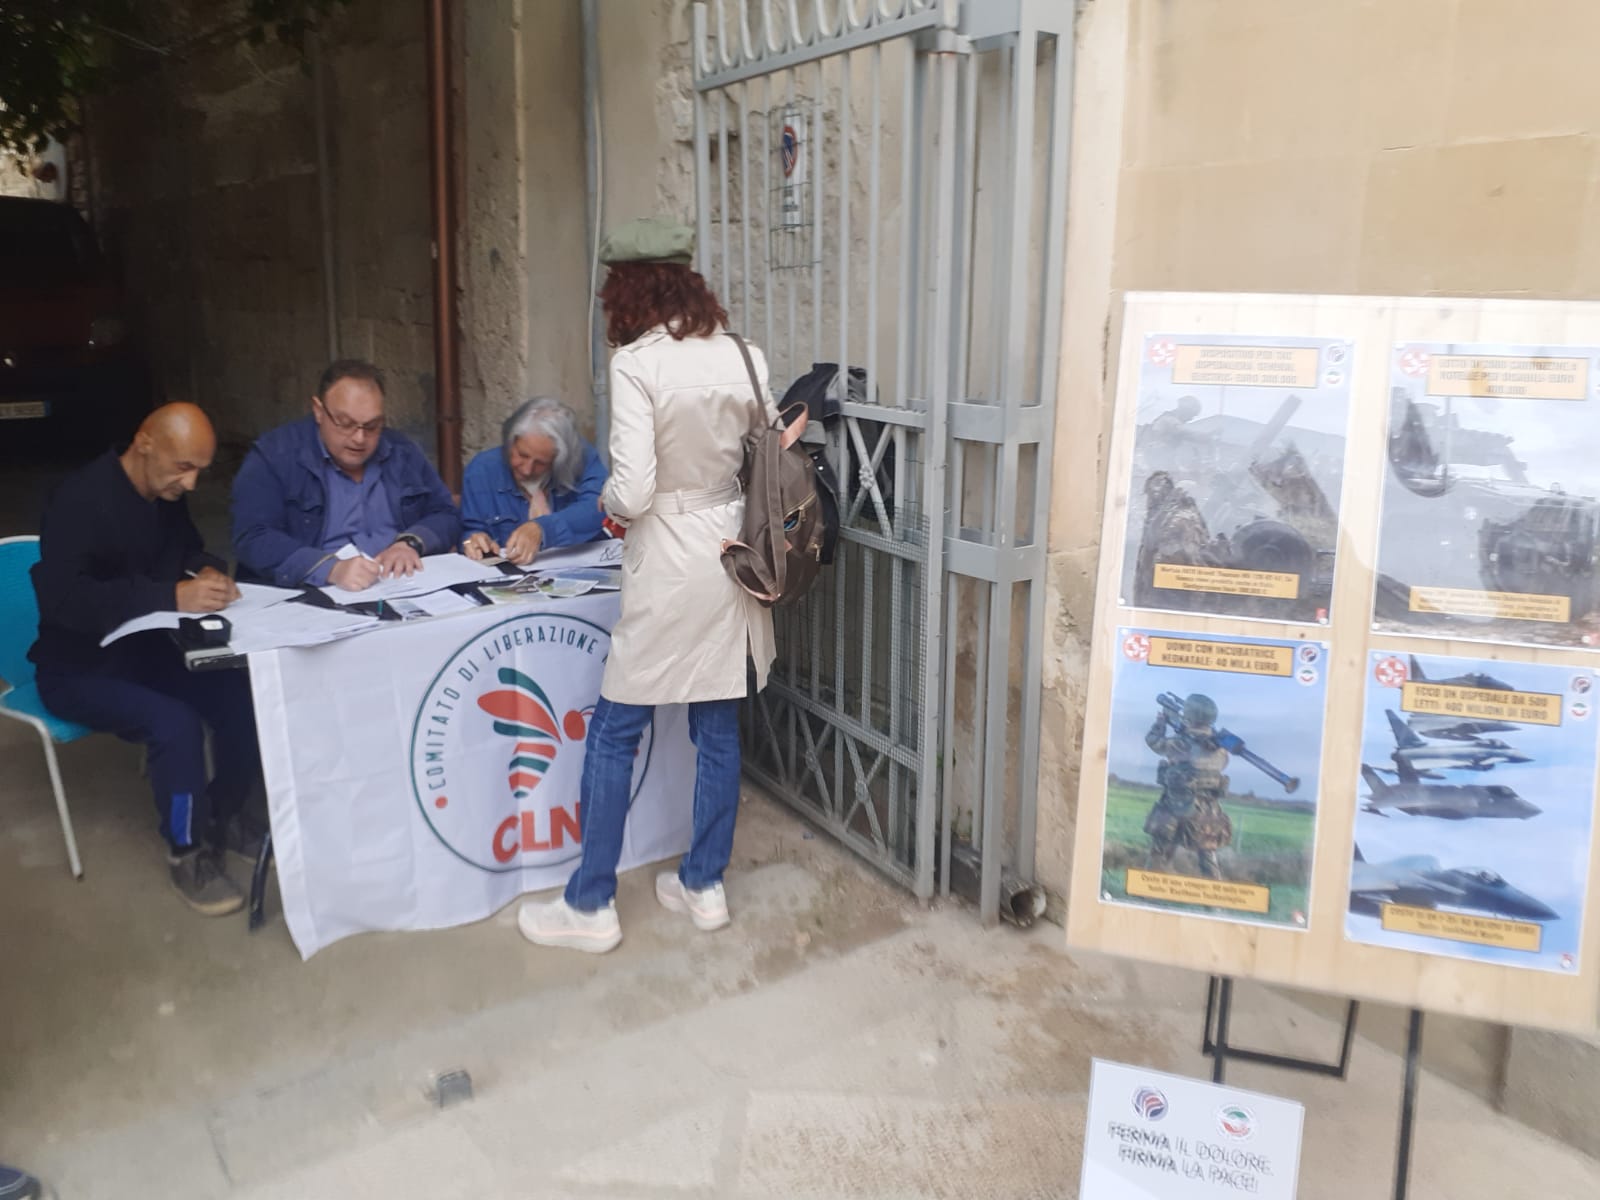 Lecce, gratis l’occupazione del suolo pubblico per finalità politiche ed elettorali.